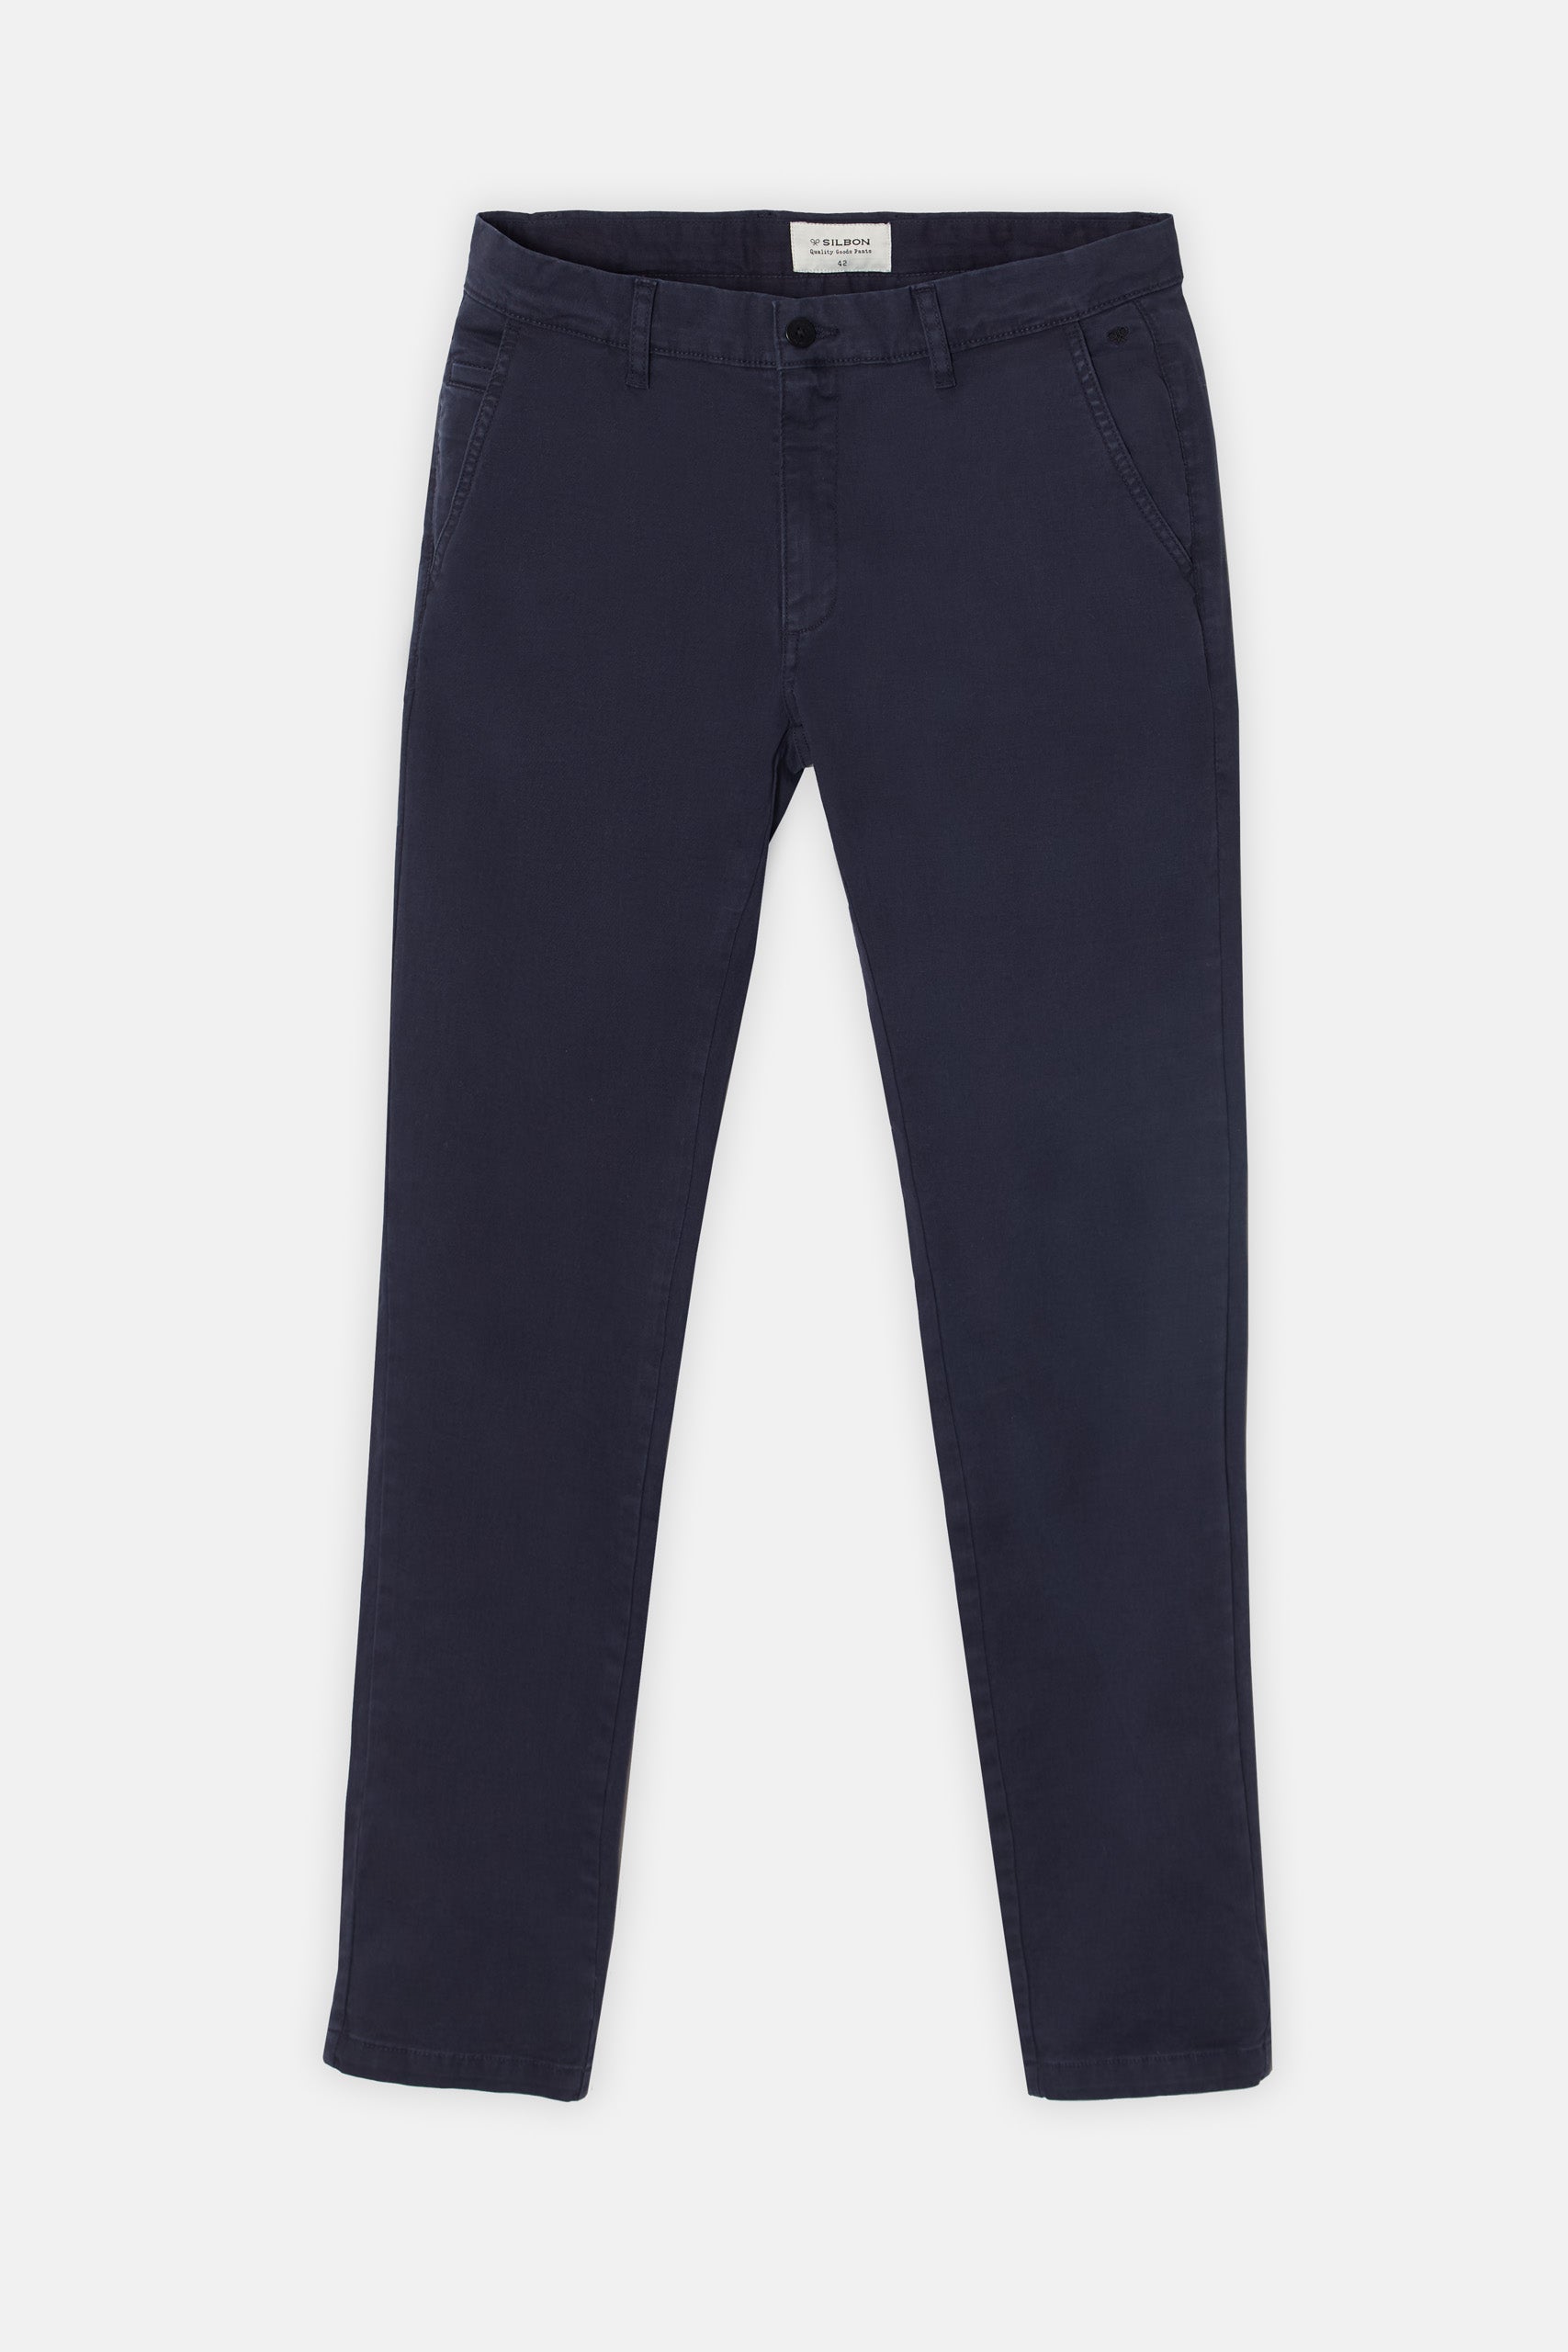 Dark blue chino sport pants